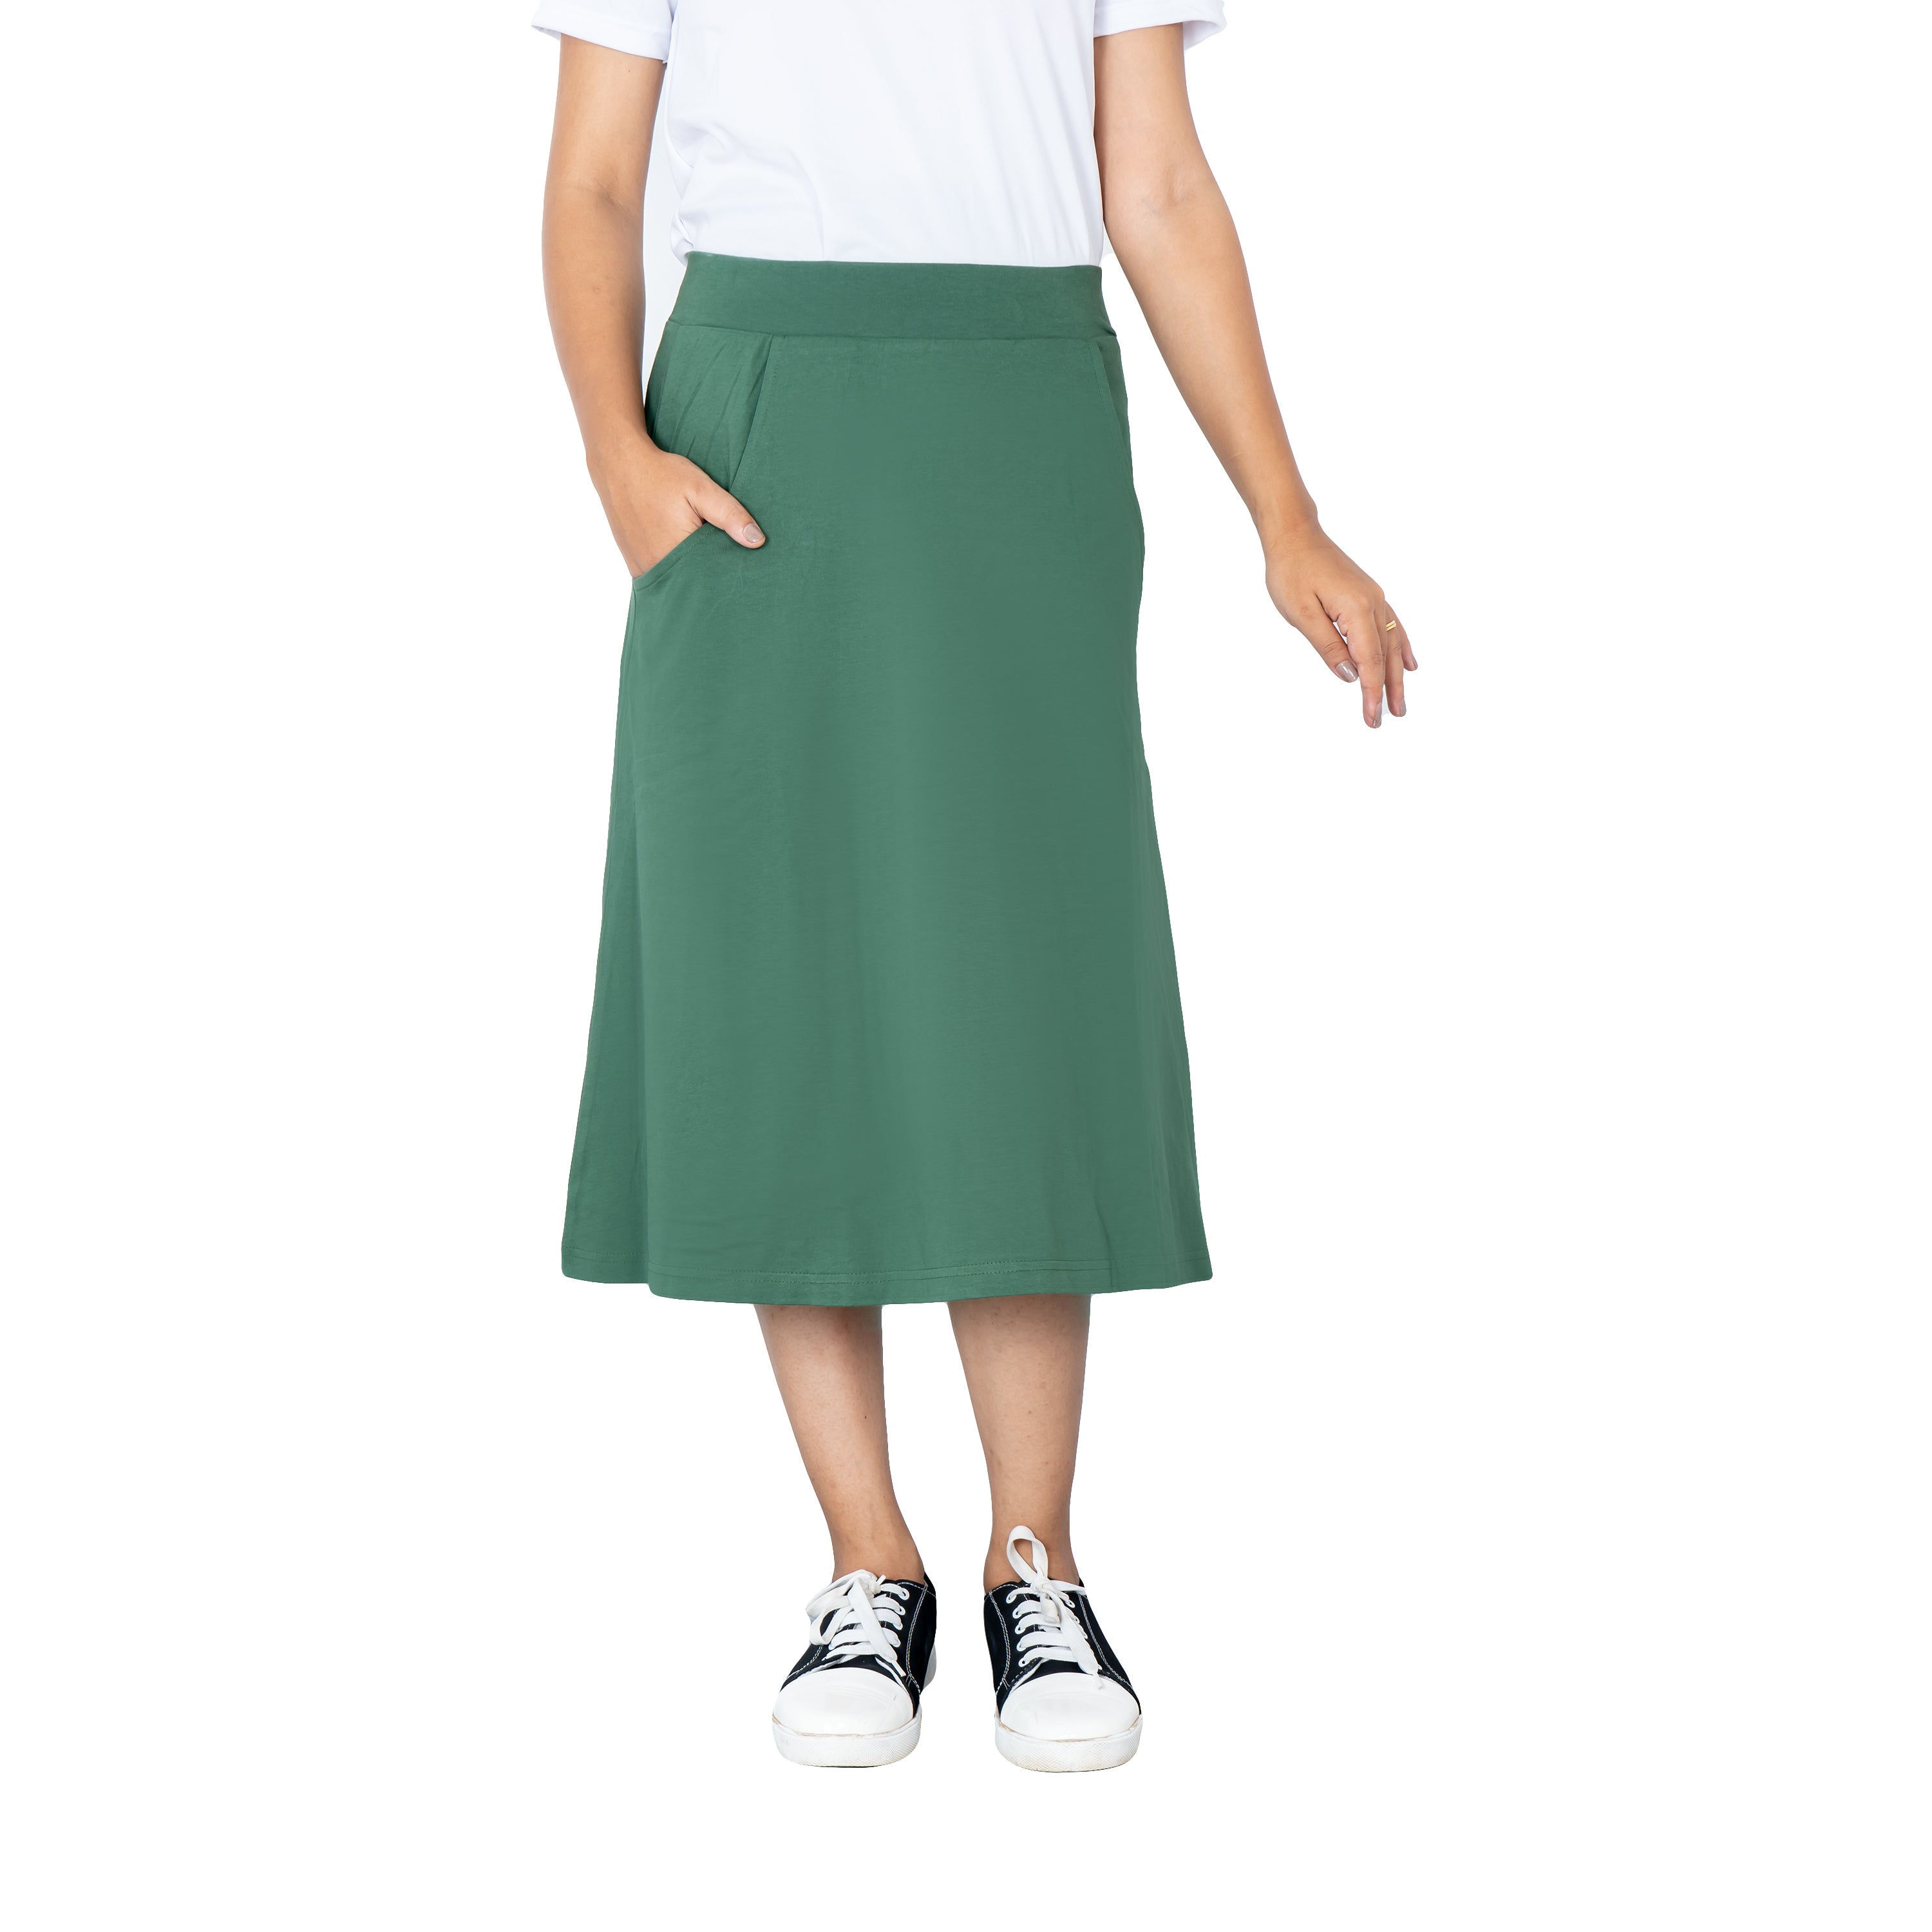 Green A-Line Skirt